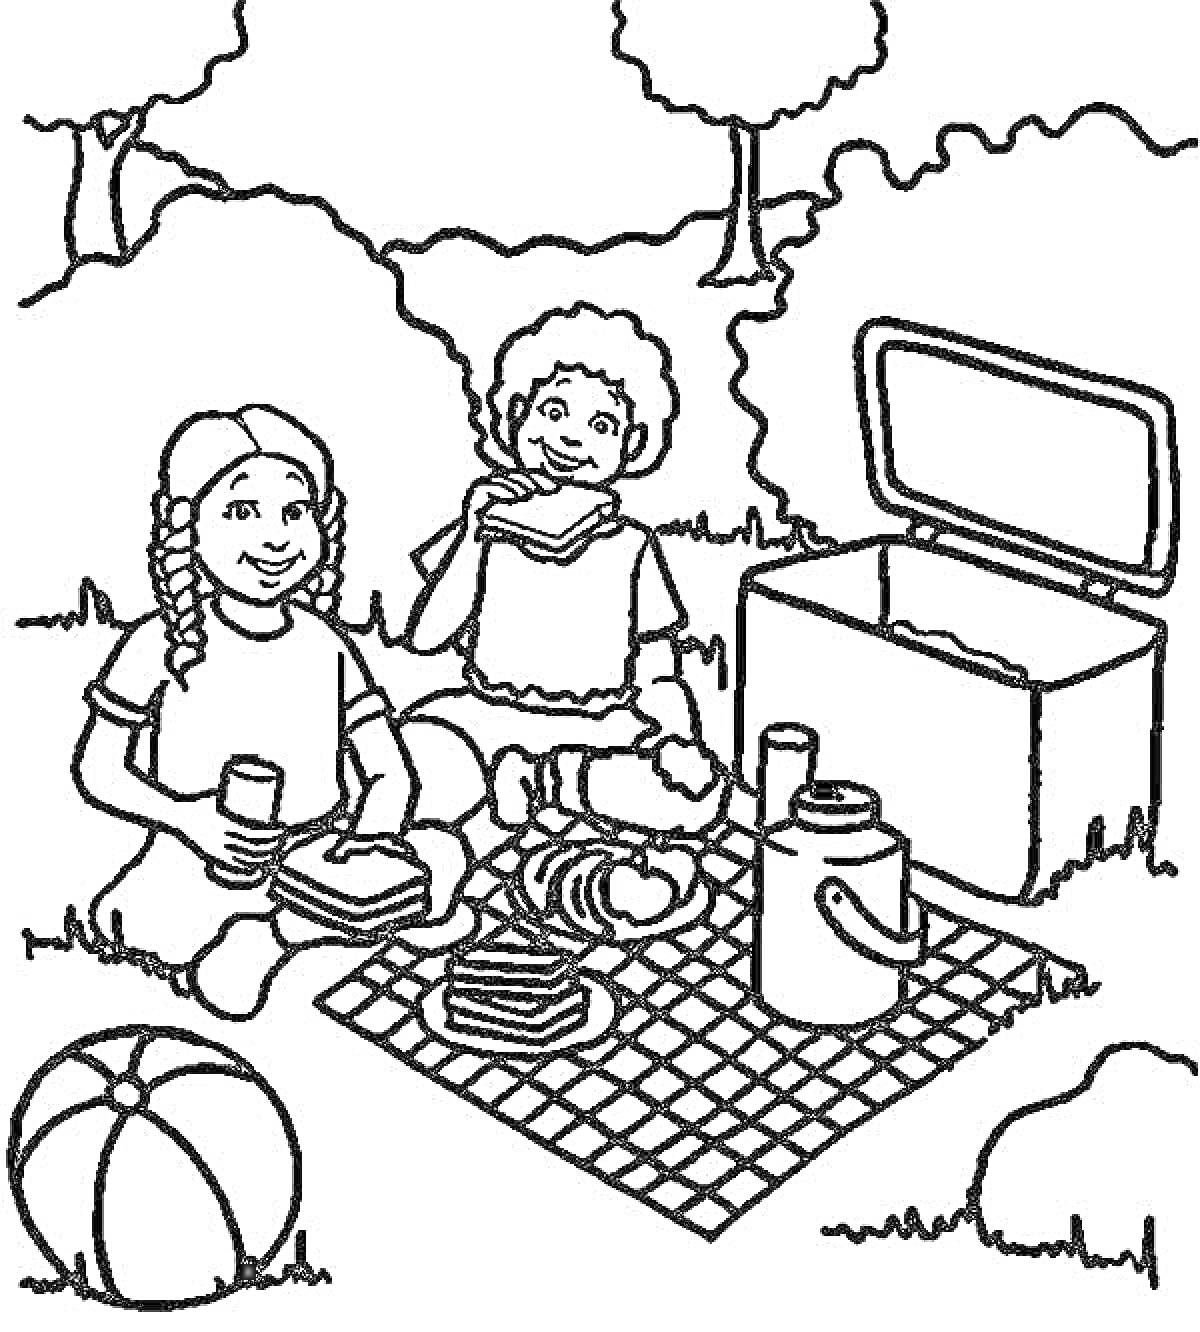 Раскраска Дети на пикнике с едой и напитками, игра с мячом на траве около корзины